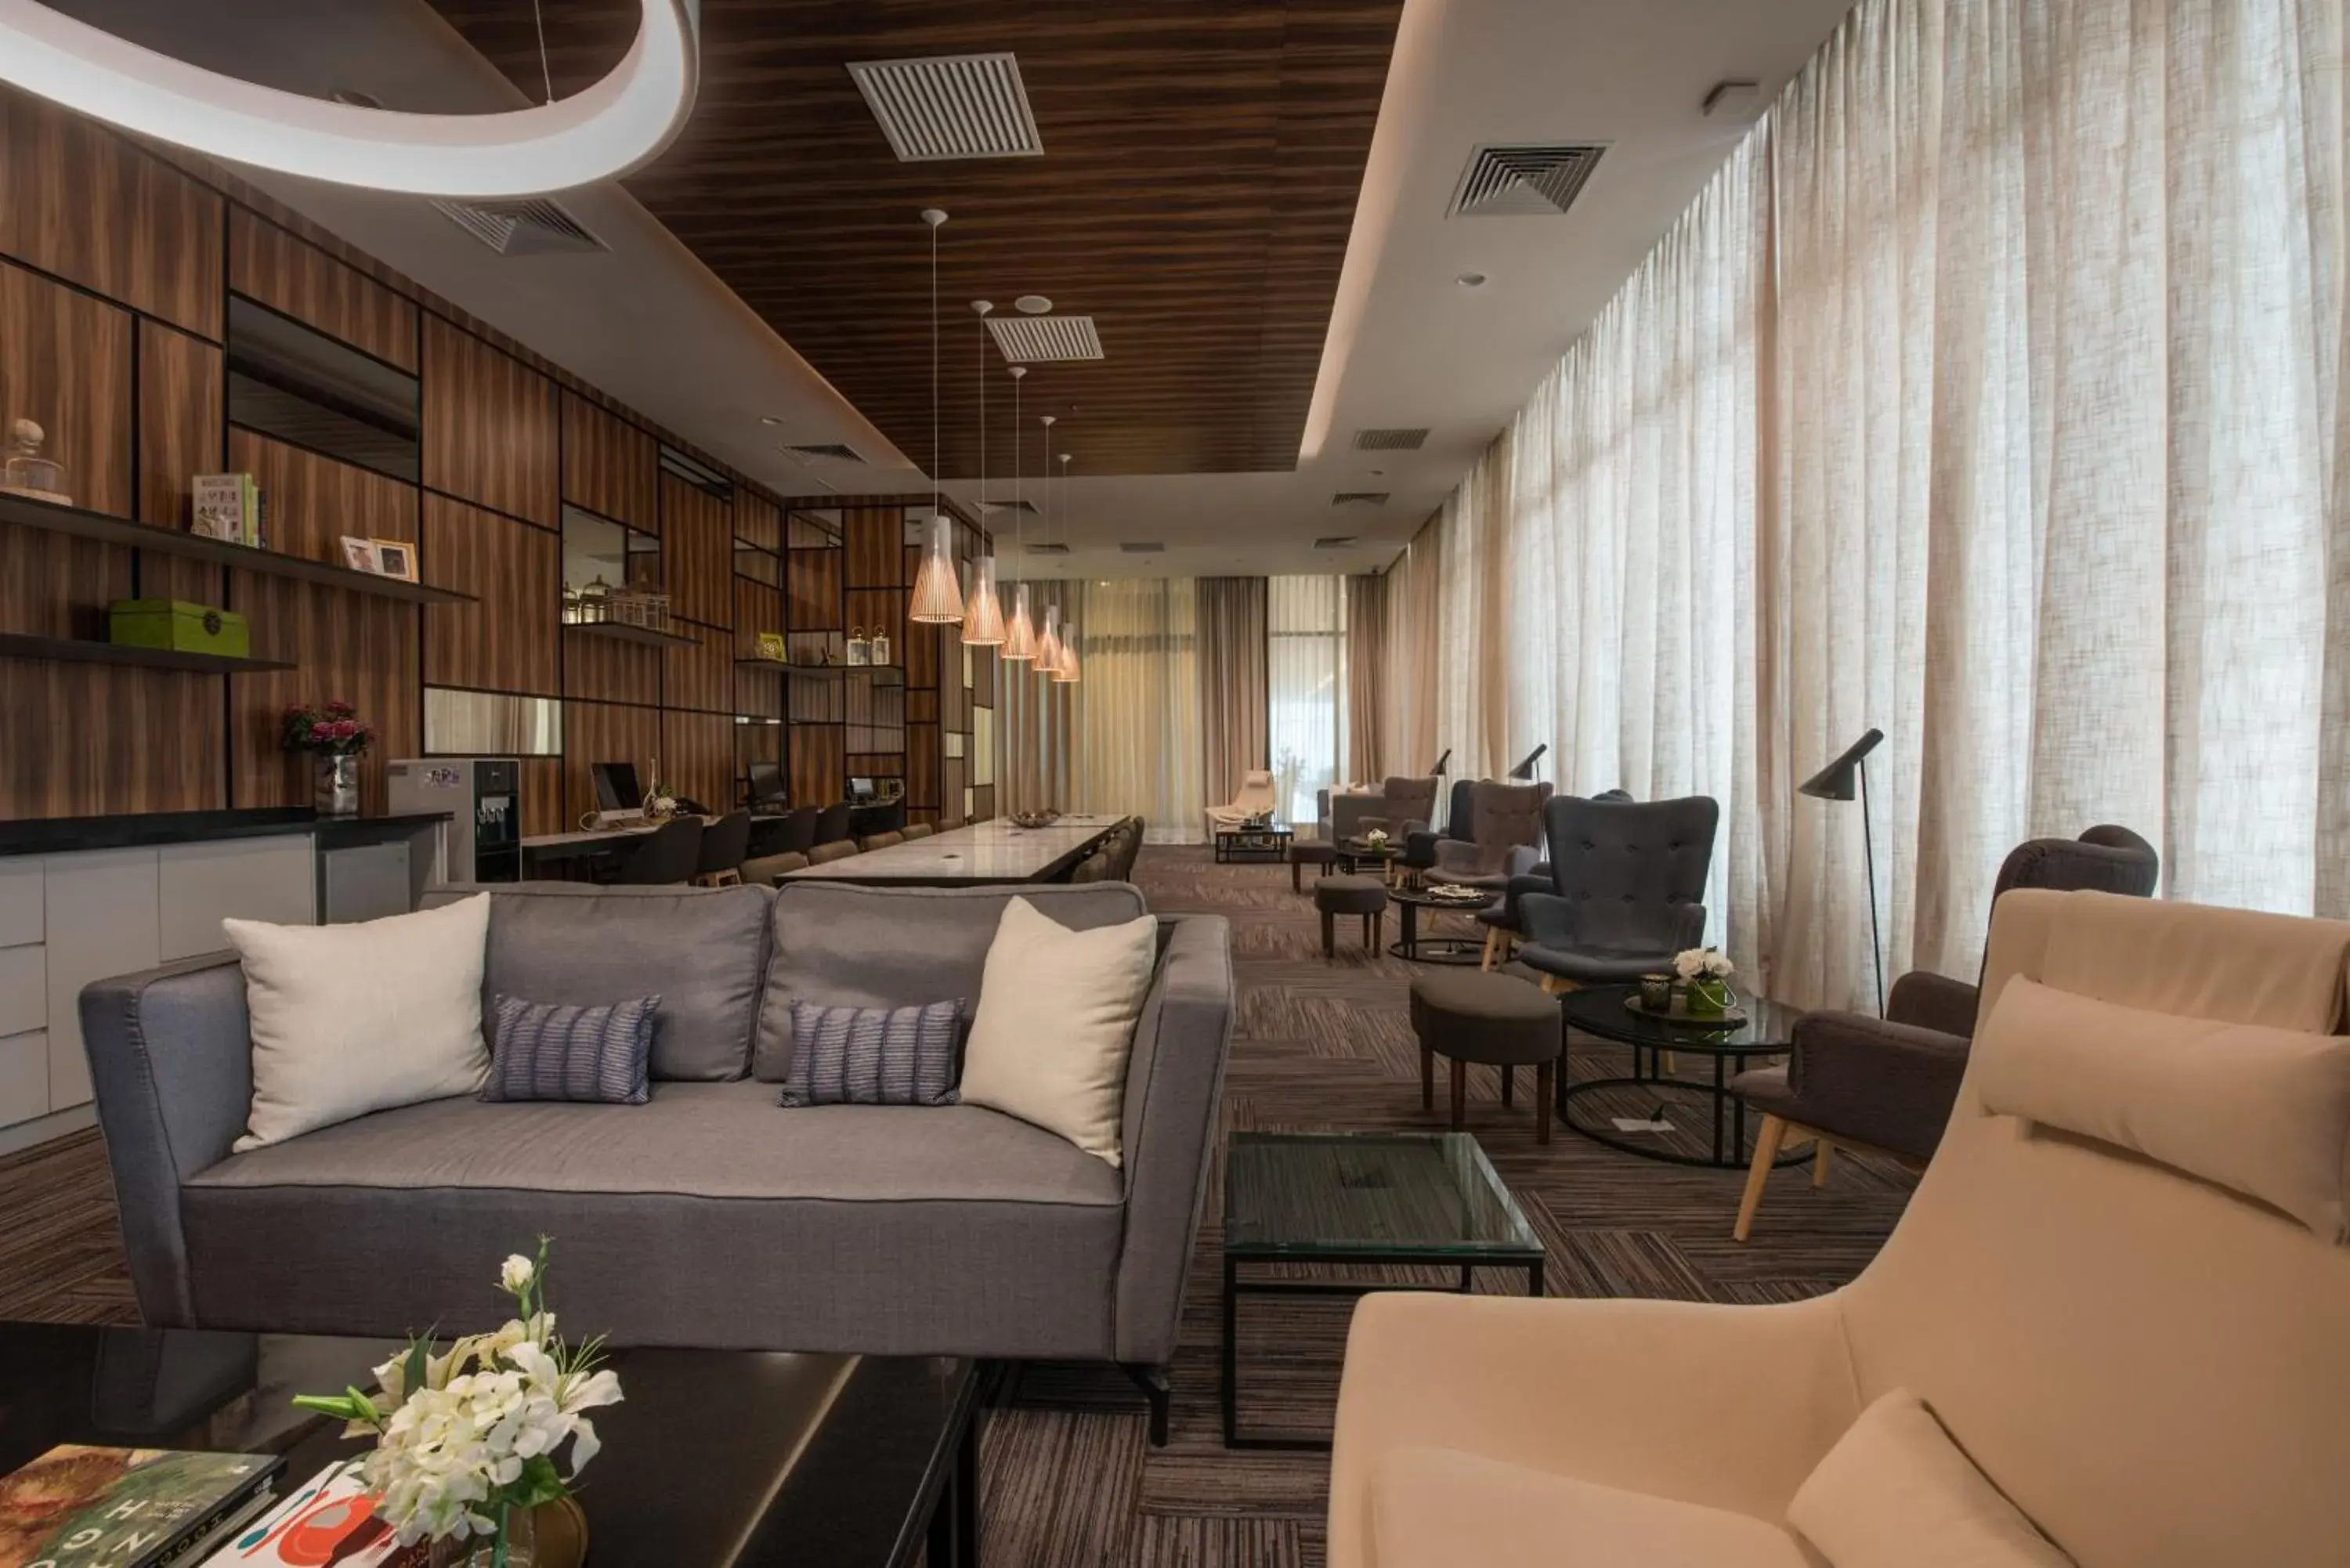 Lounge or bar, Seating Area in Somerset Damansara Uptown Petaling Jaya